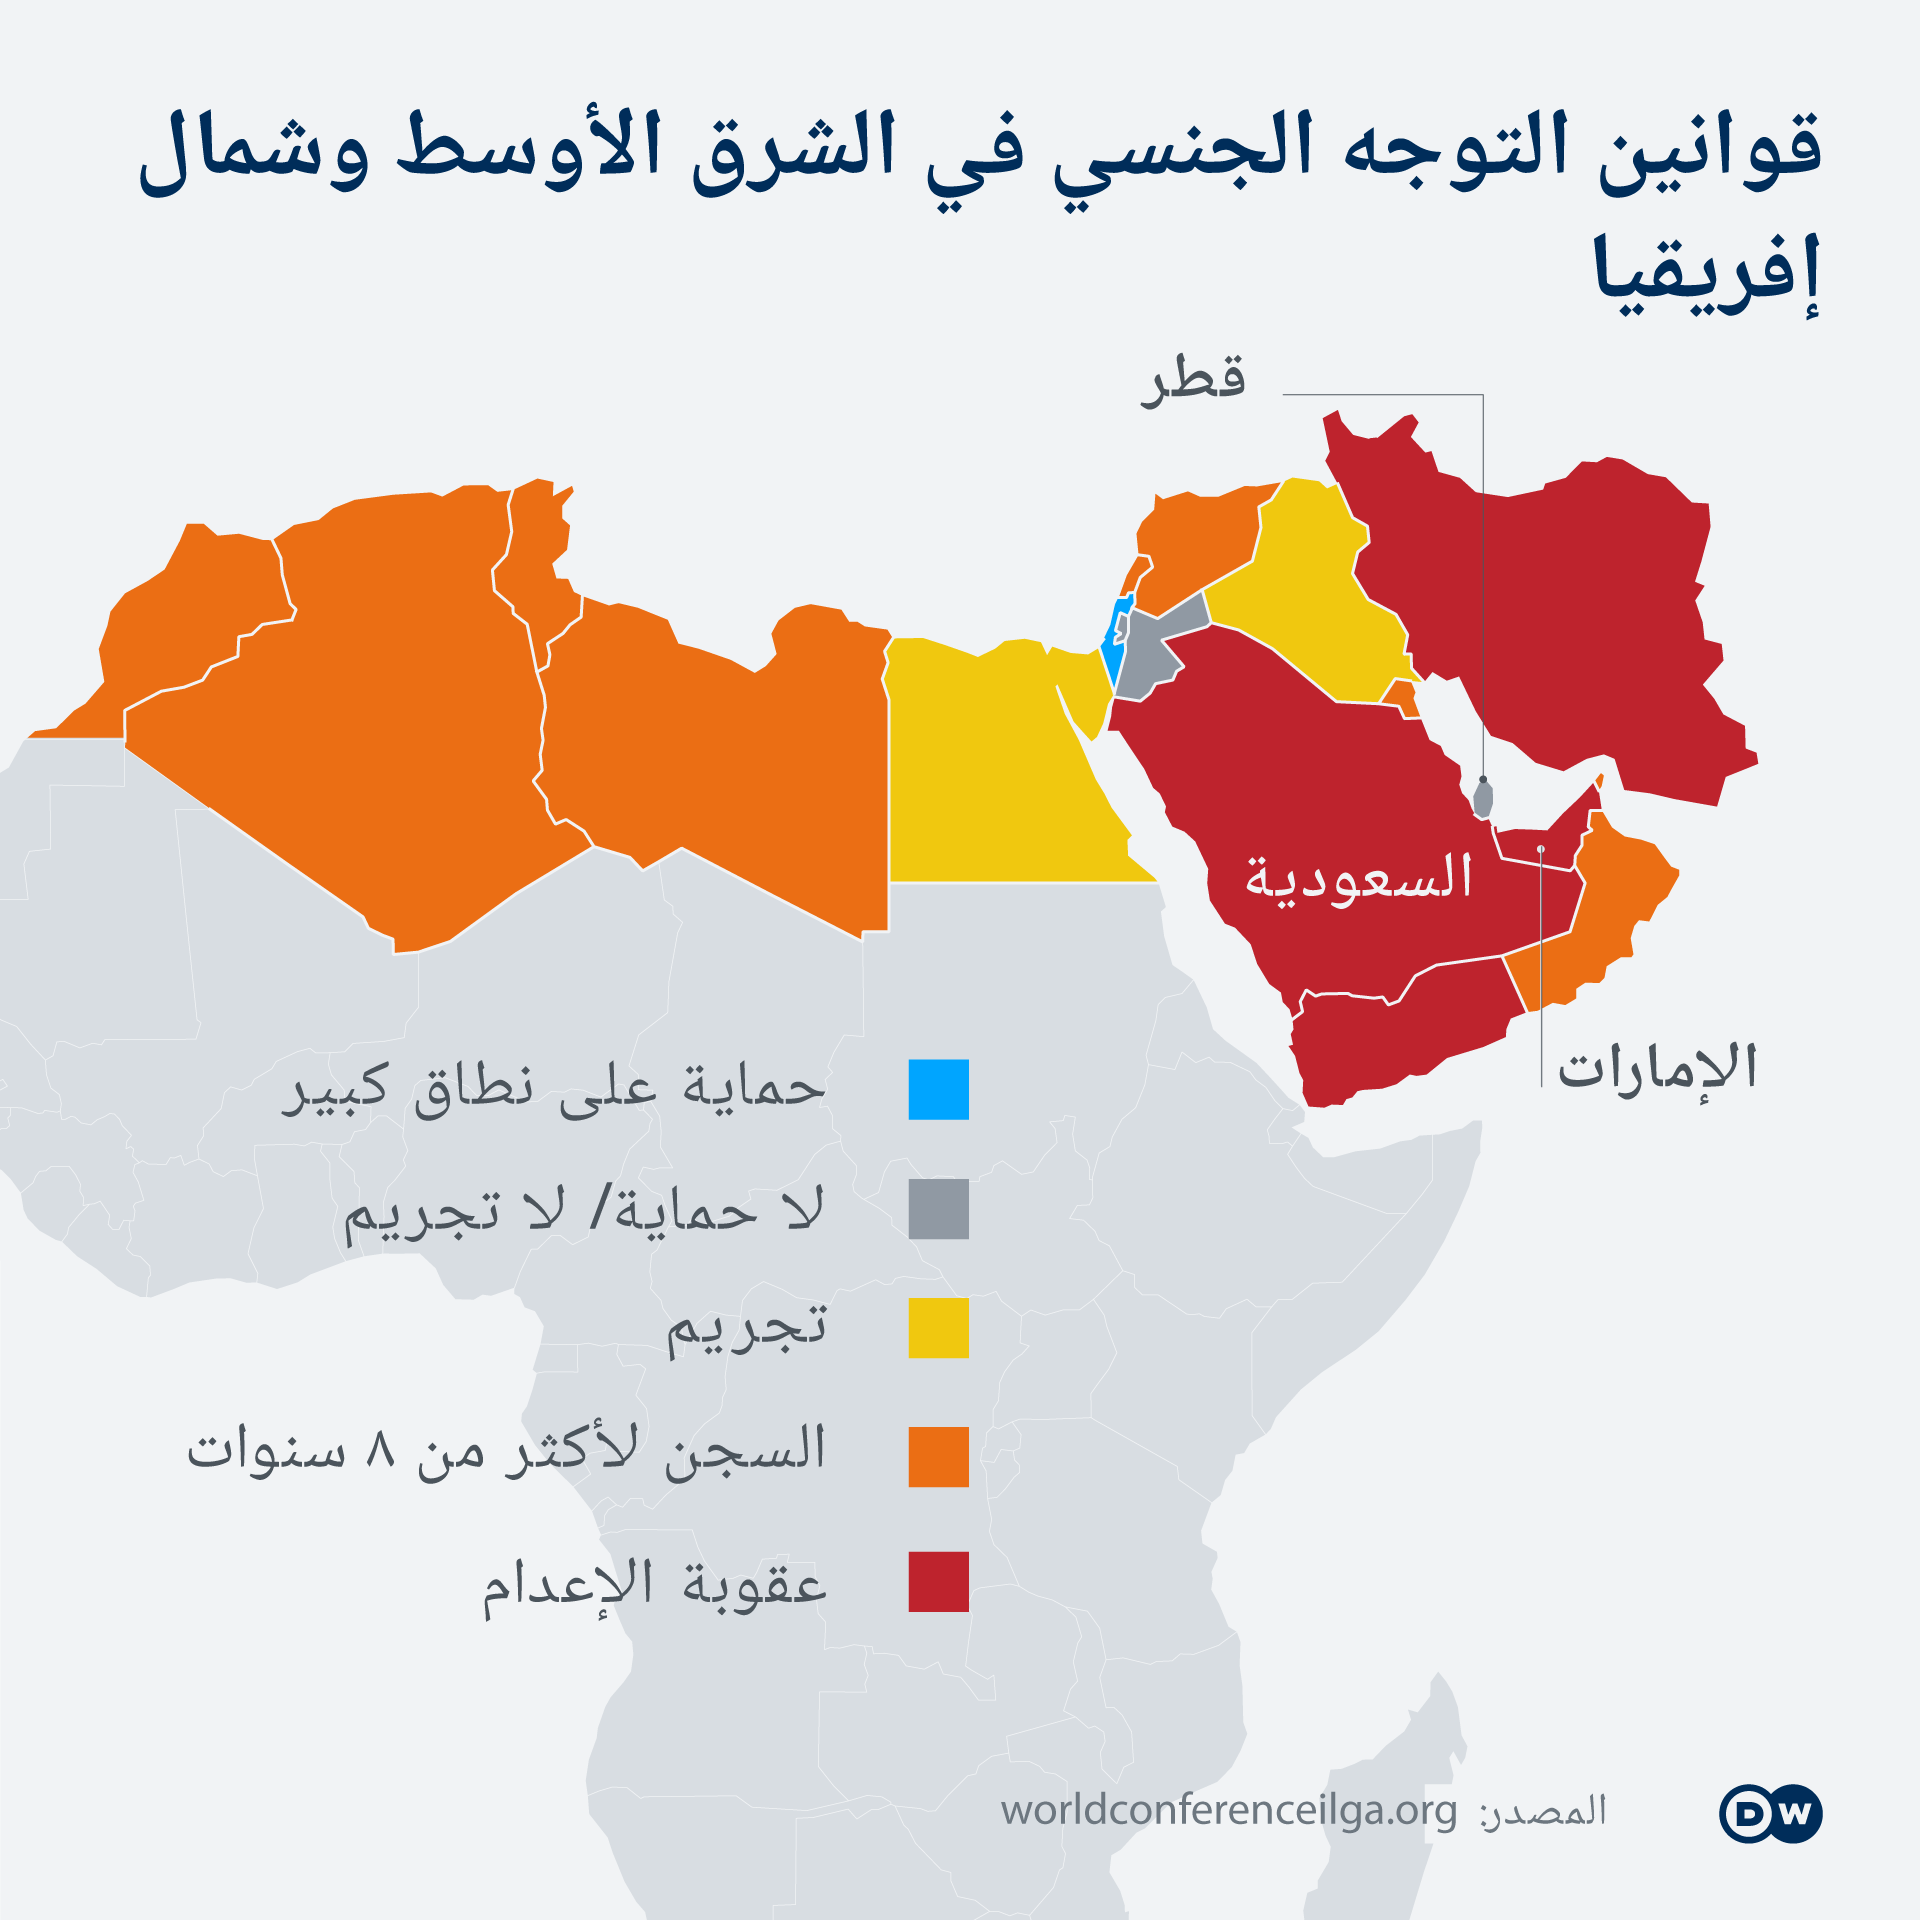 خريطة قوانين التوجه الجنسي في الشرق الأوسط وشمال إفريقيا.  DW Infografik Verbot Homosexualität MENA AR